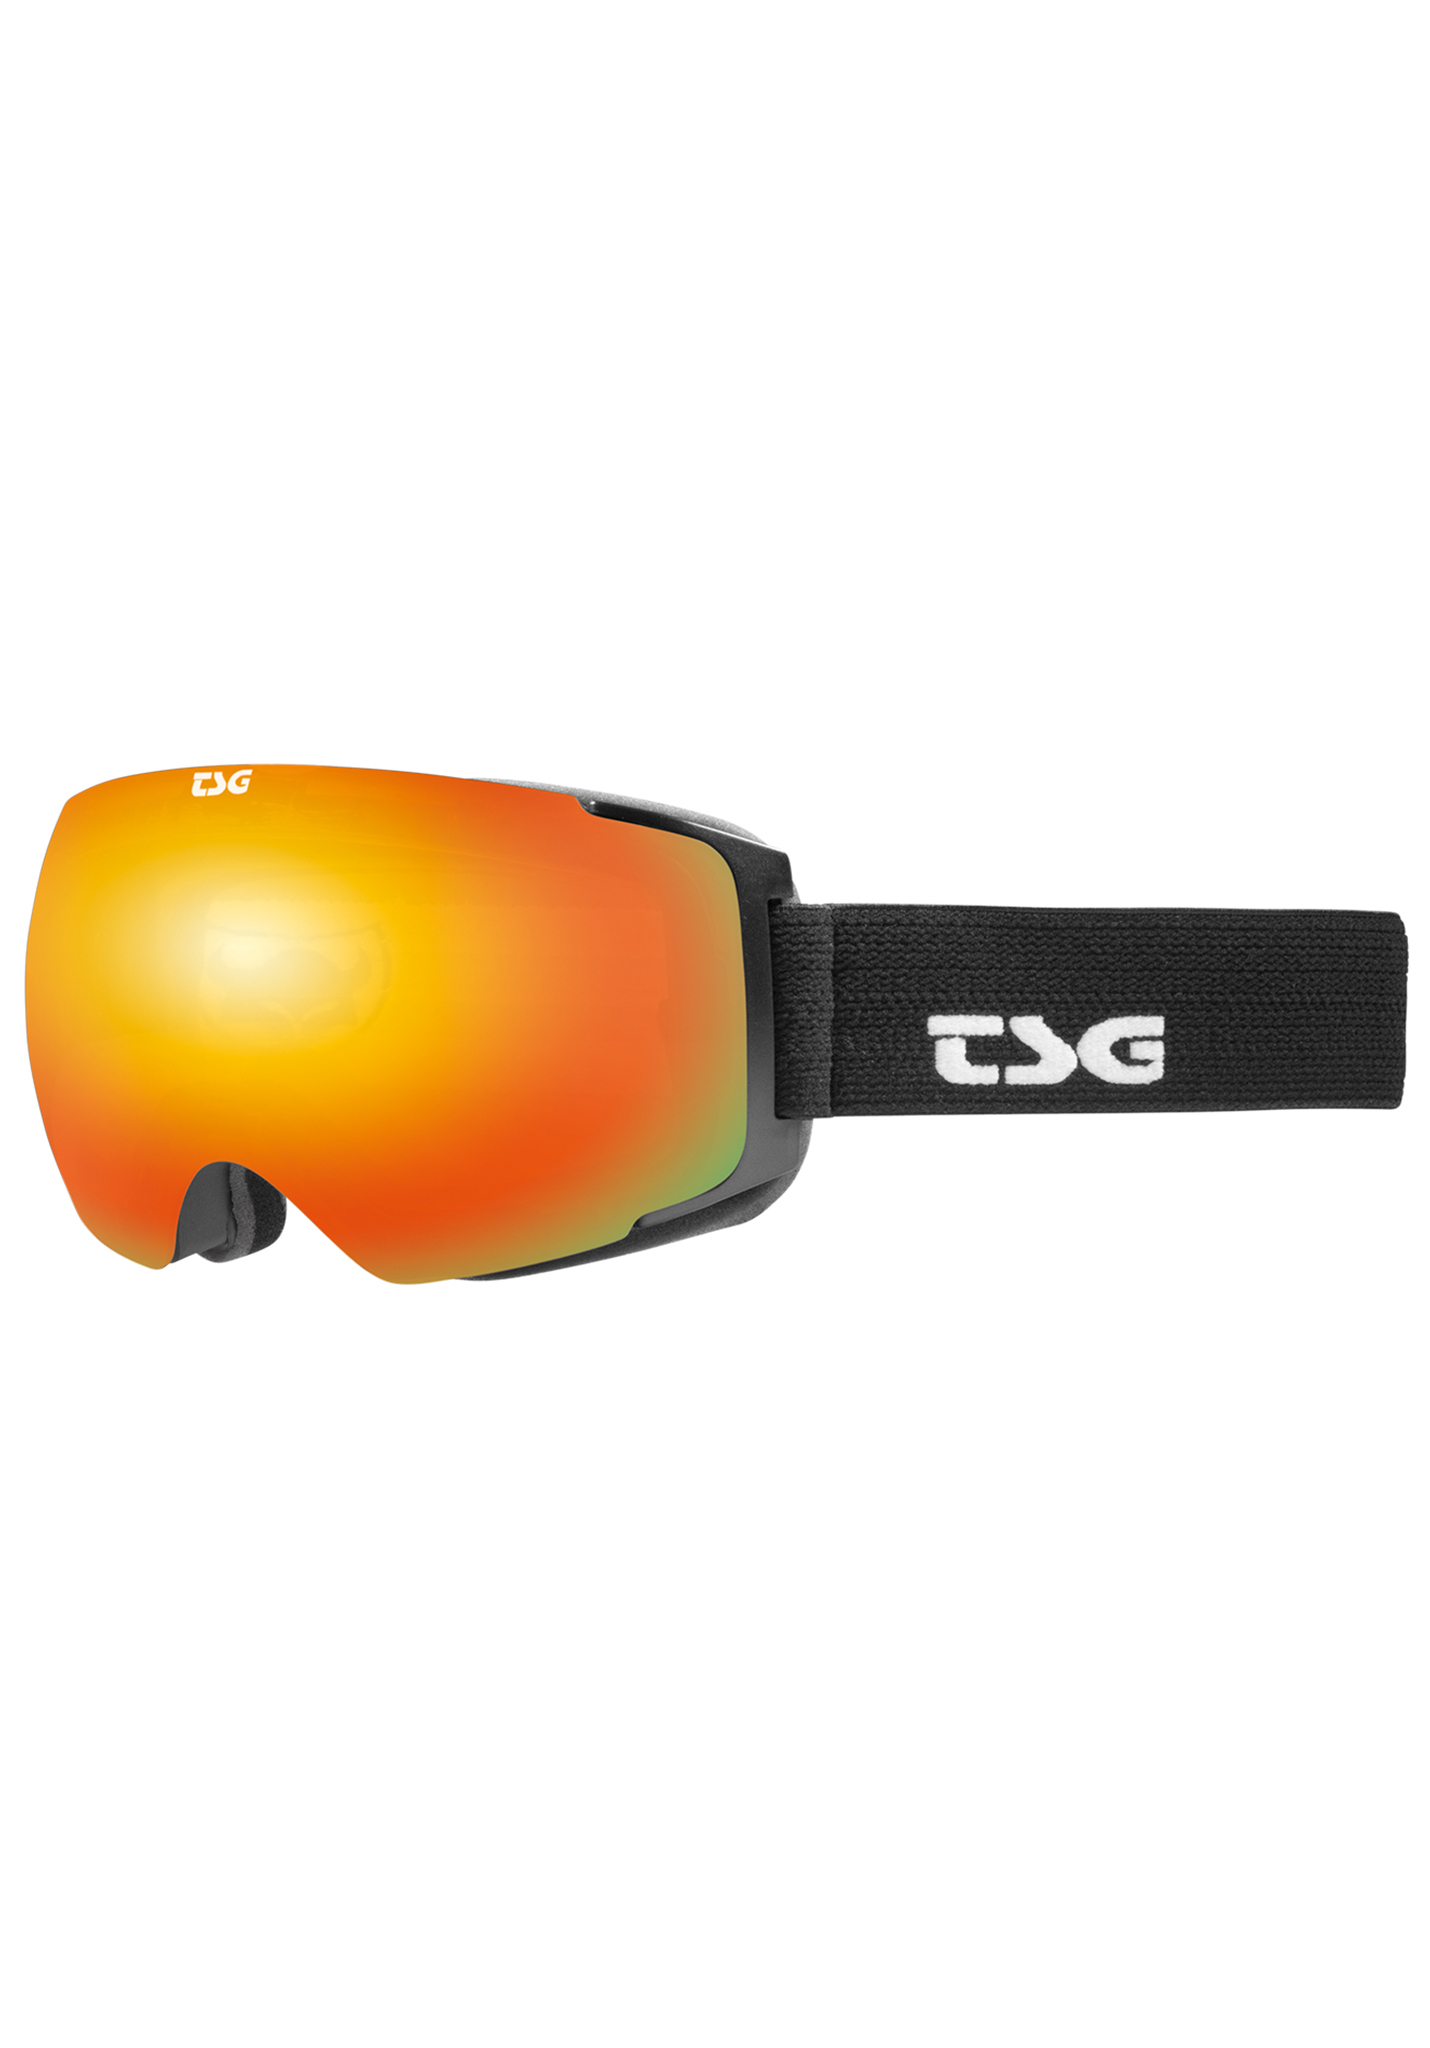 TSG Two Snowboardbrillen massiv schwarz / rot chrom One Size